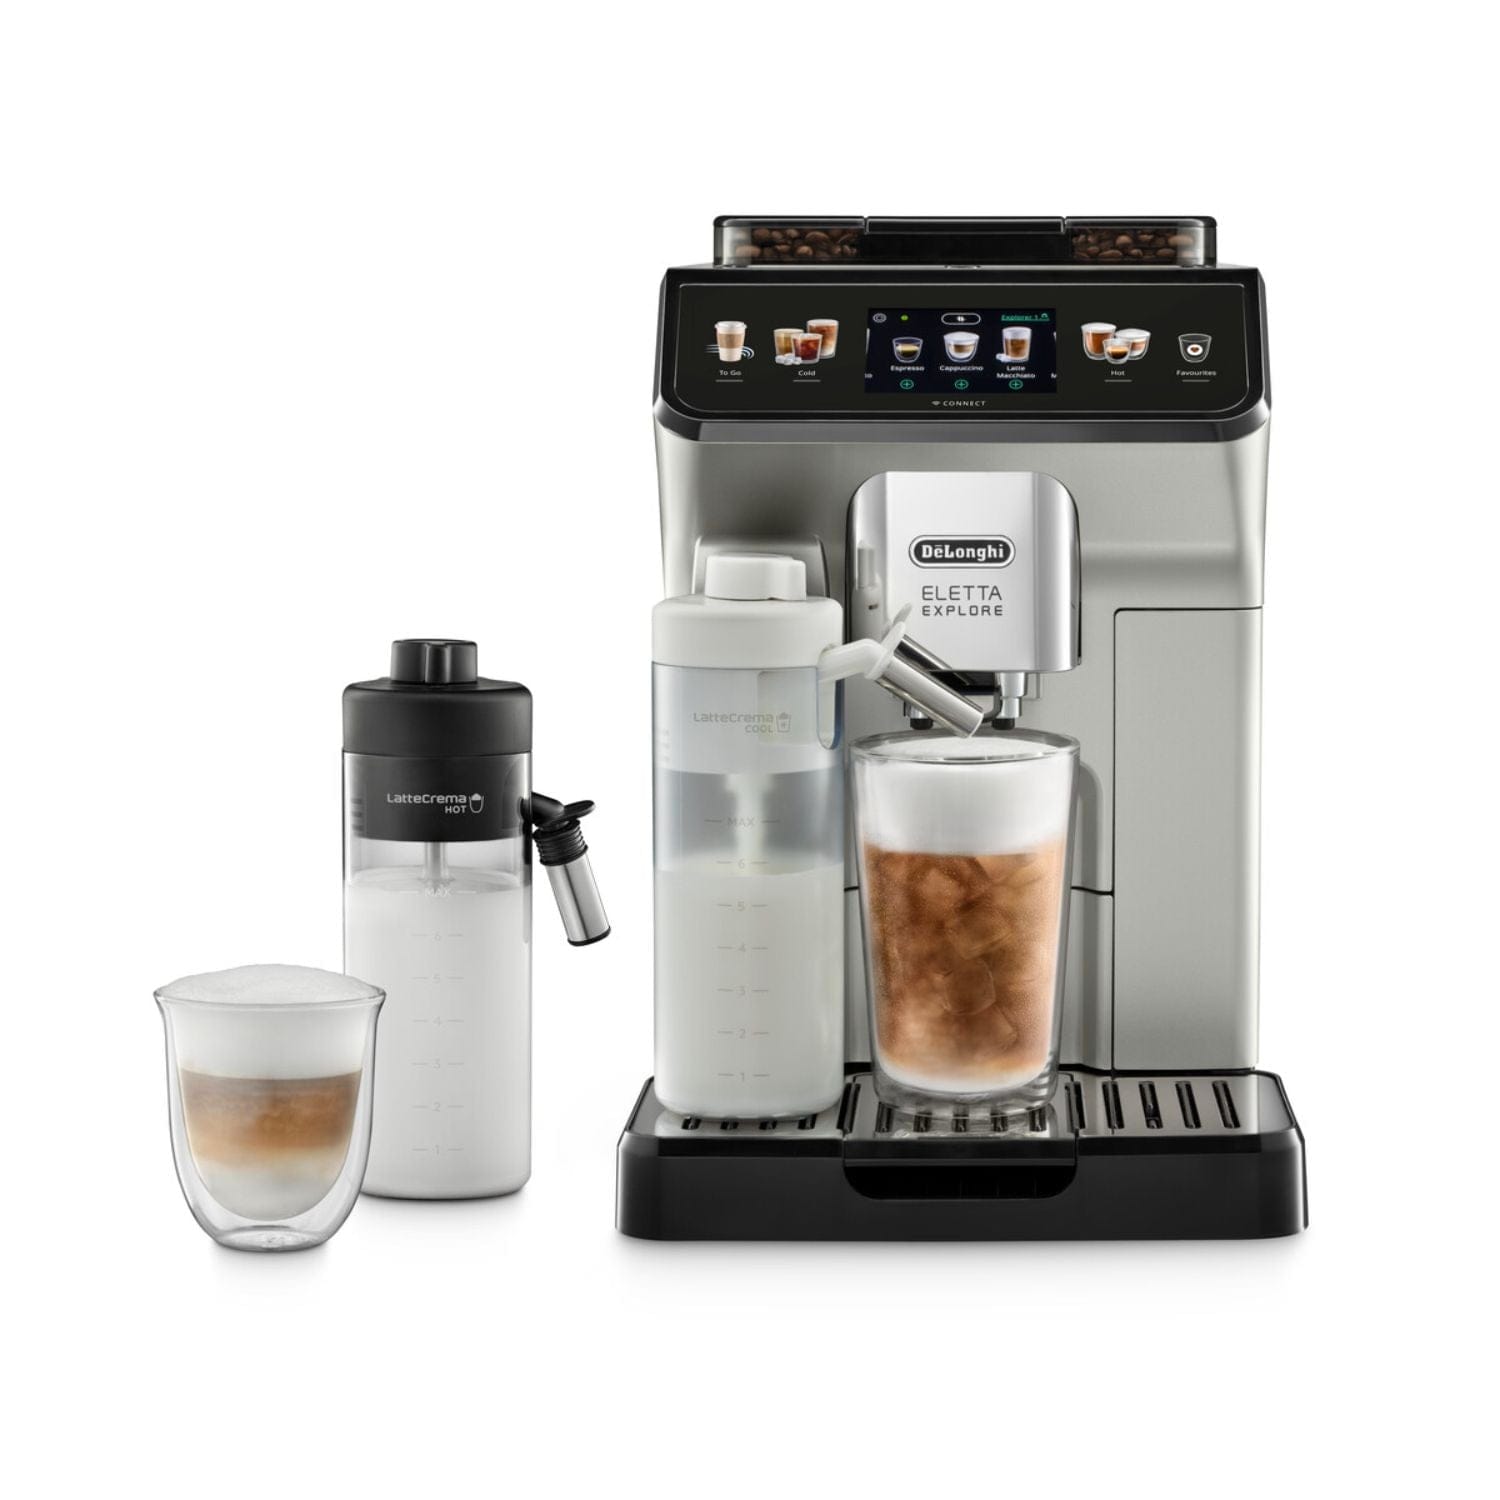 ماكينة تحضير القهوة ديلونجي إليتا إكسبلور فضي - ECAM450.65.S - عادي